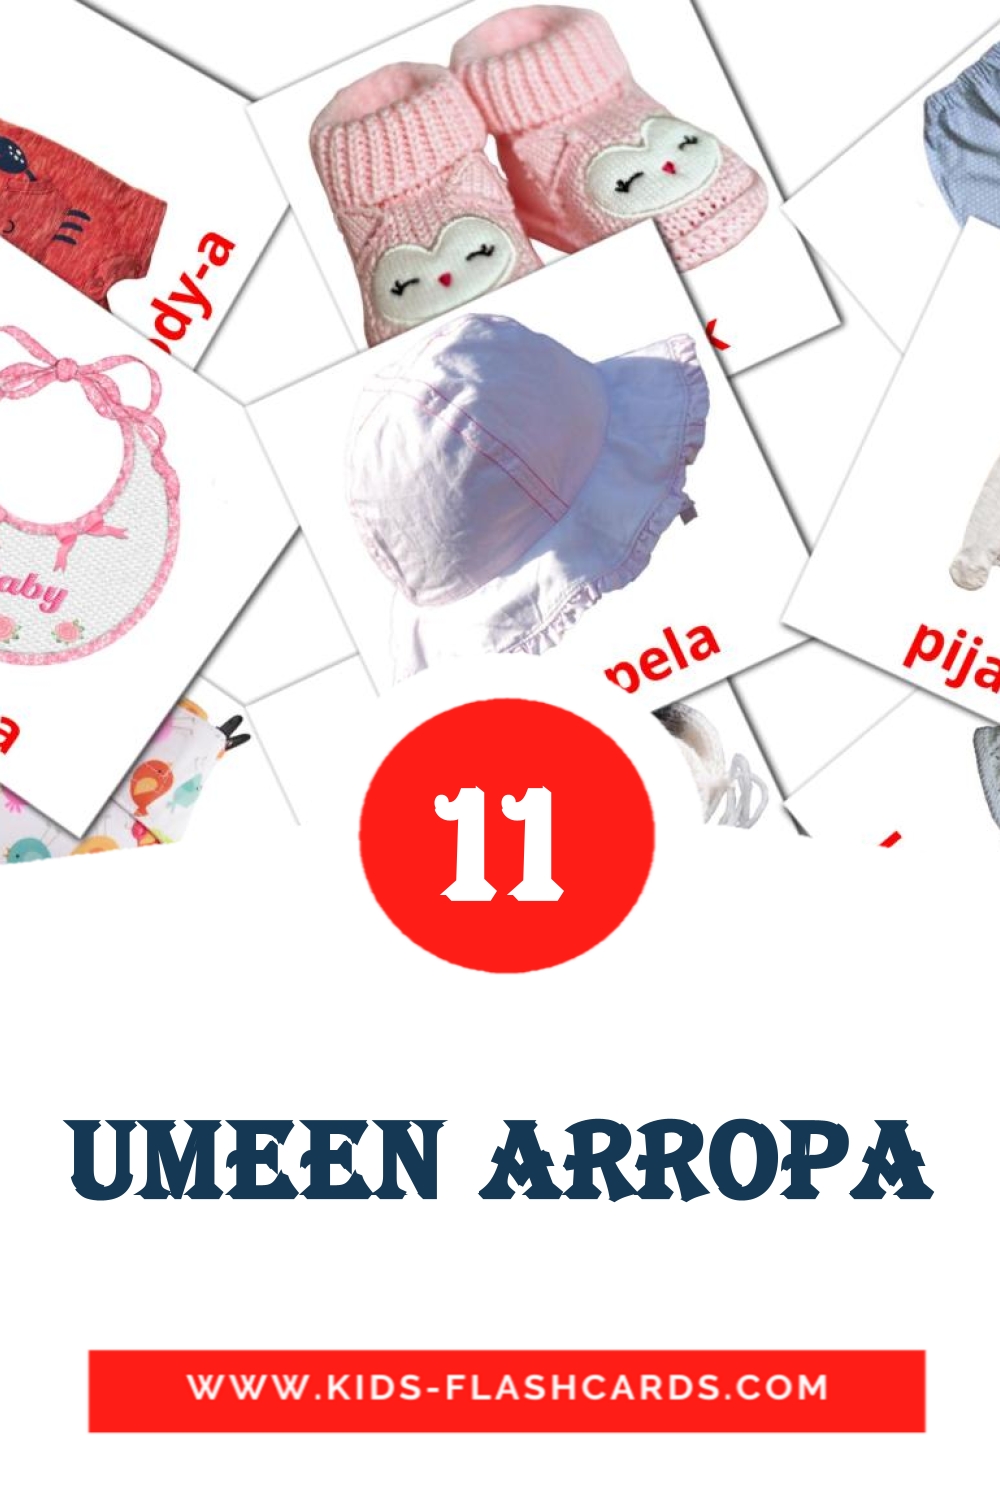 11 cartes illustrées de umeen arropa pour la maternelle en basque